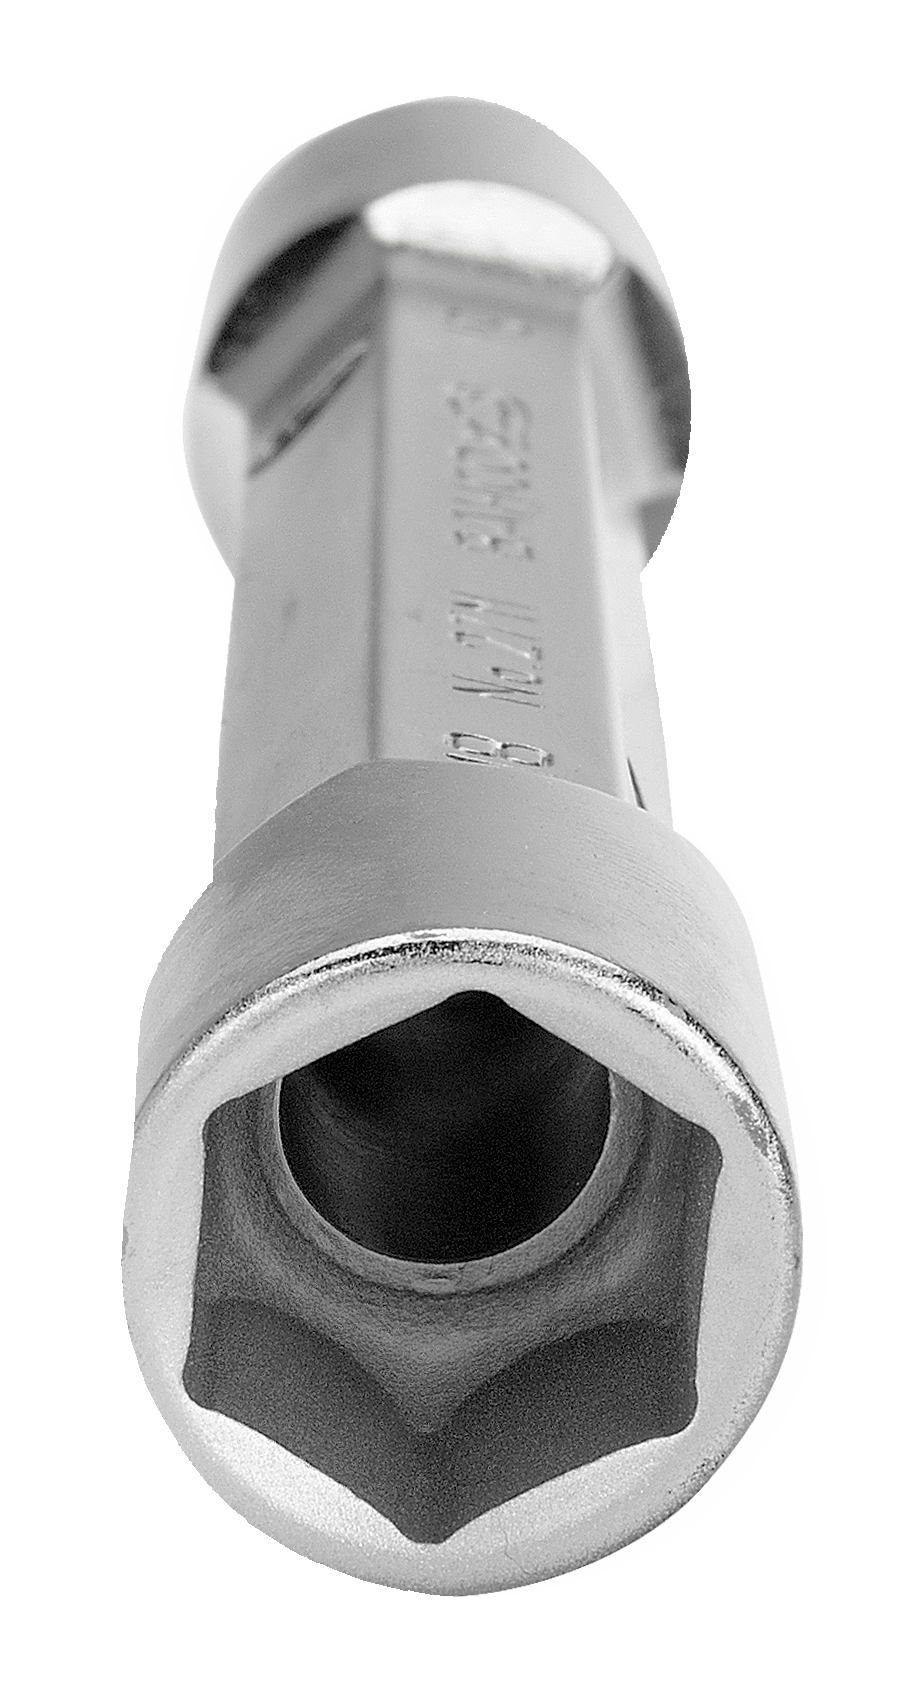 картинка Двойной торцевой ключ метрических размеров BAHCO SB27M-6-7 от магазина "Элит-инструмент"